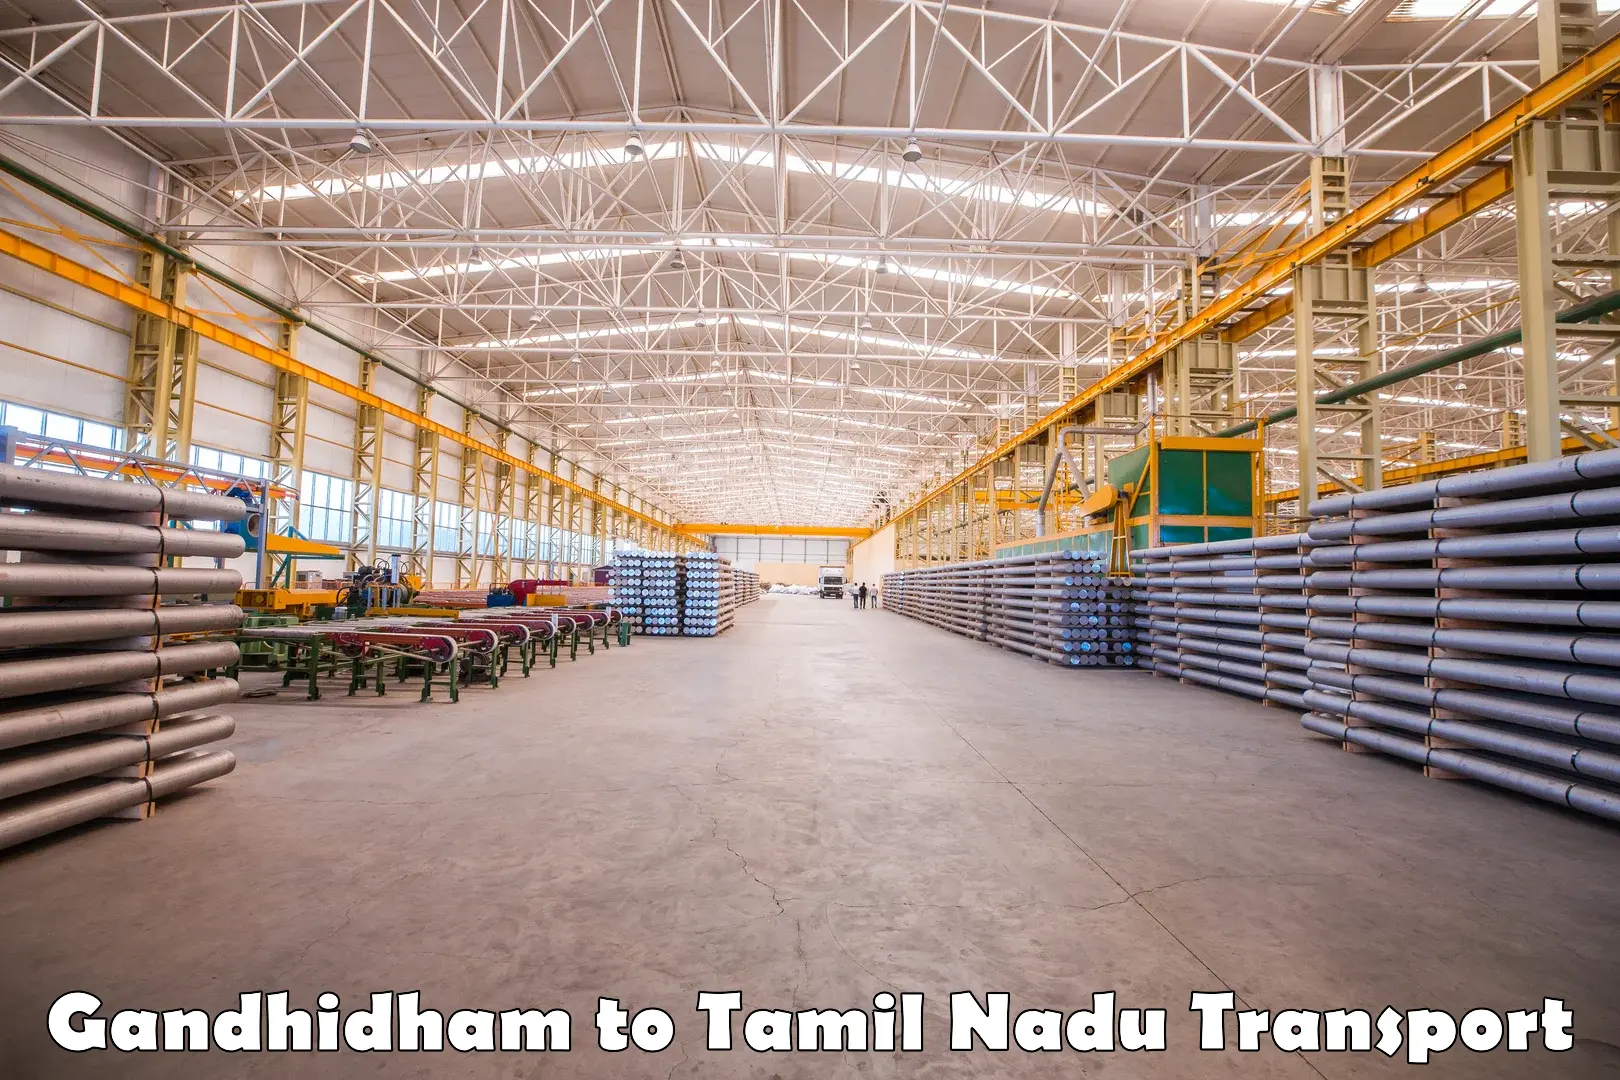 Commercial transport service Gandhidham to Marakkanam